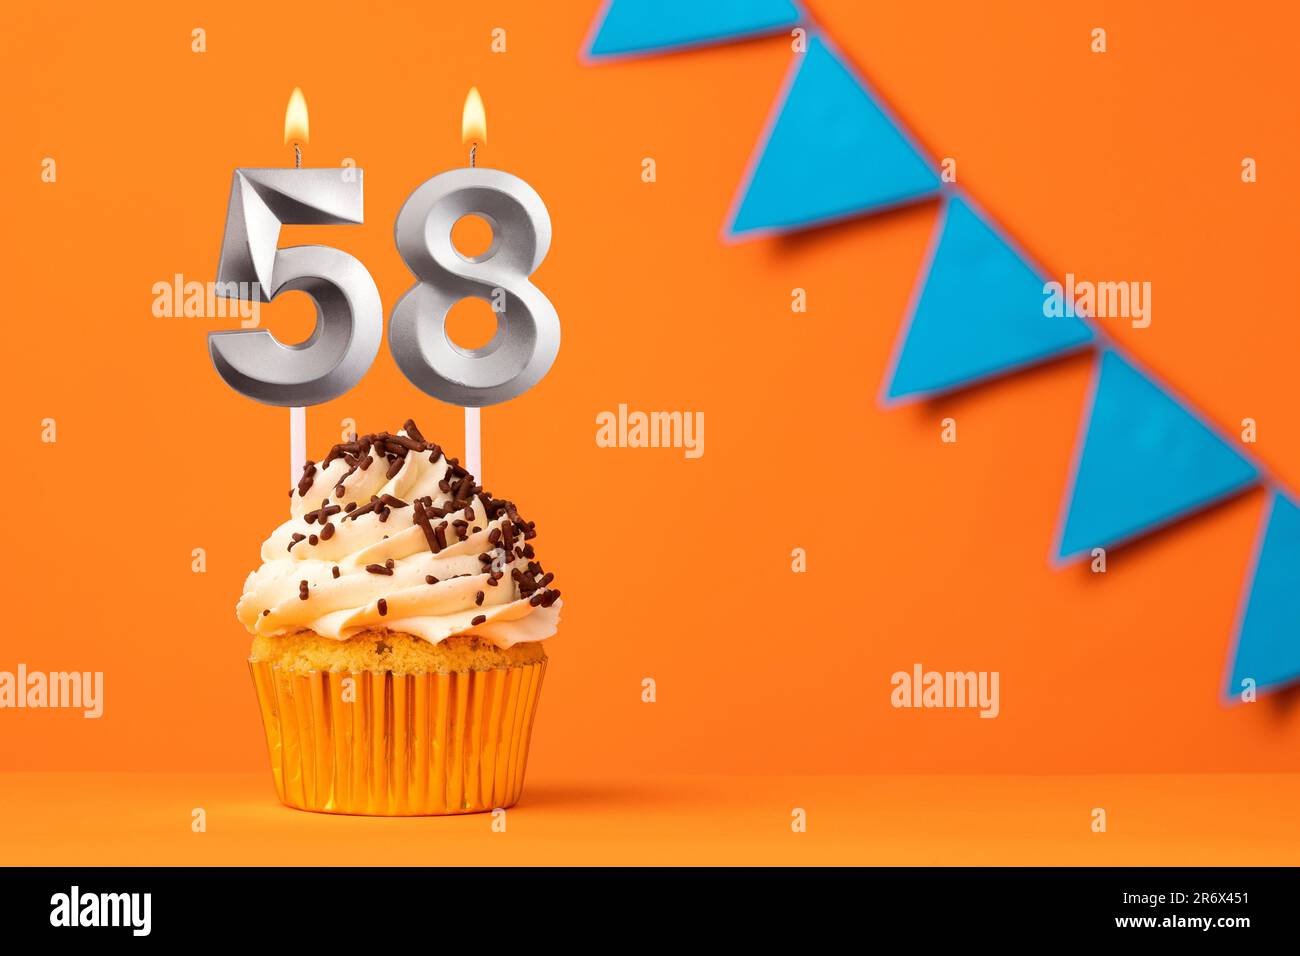 Torta di compleanno con candela numero 58 - sfondo arancione Foto Stock